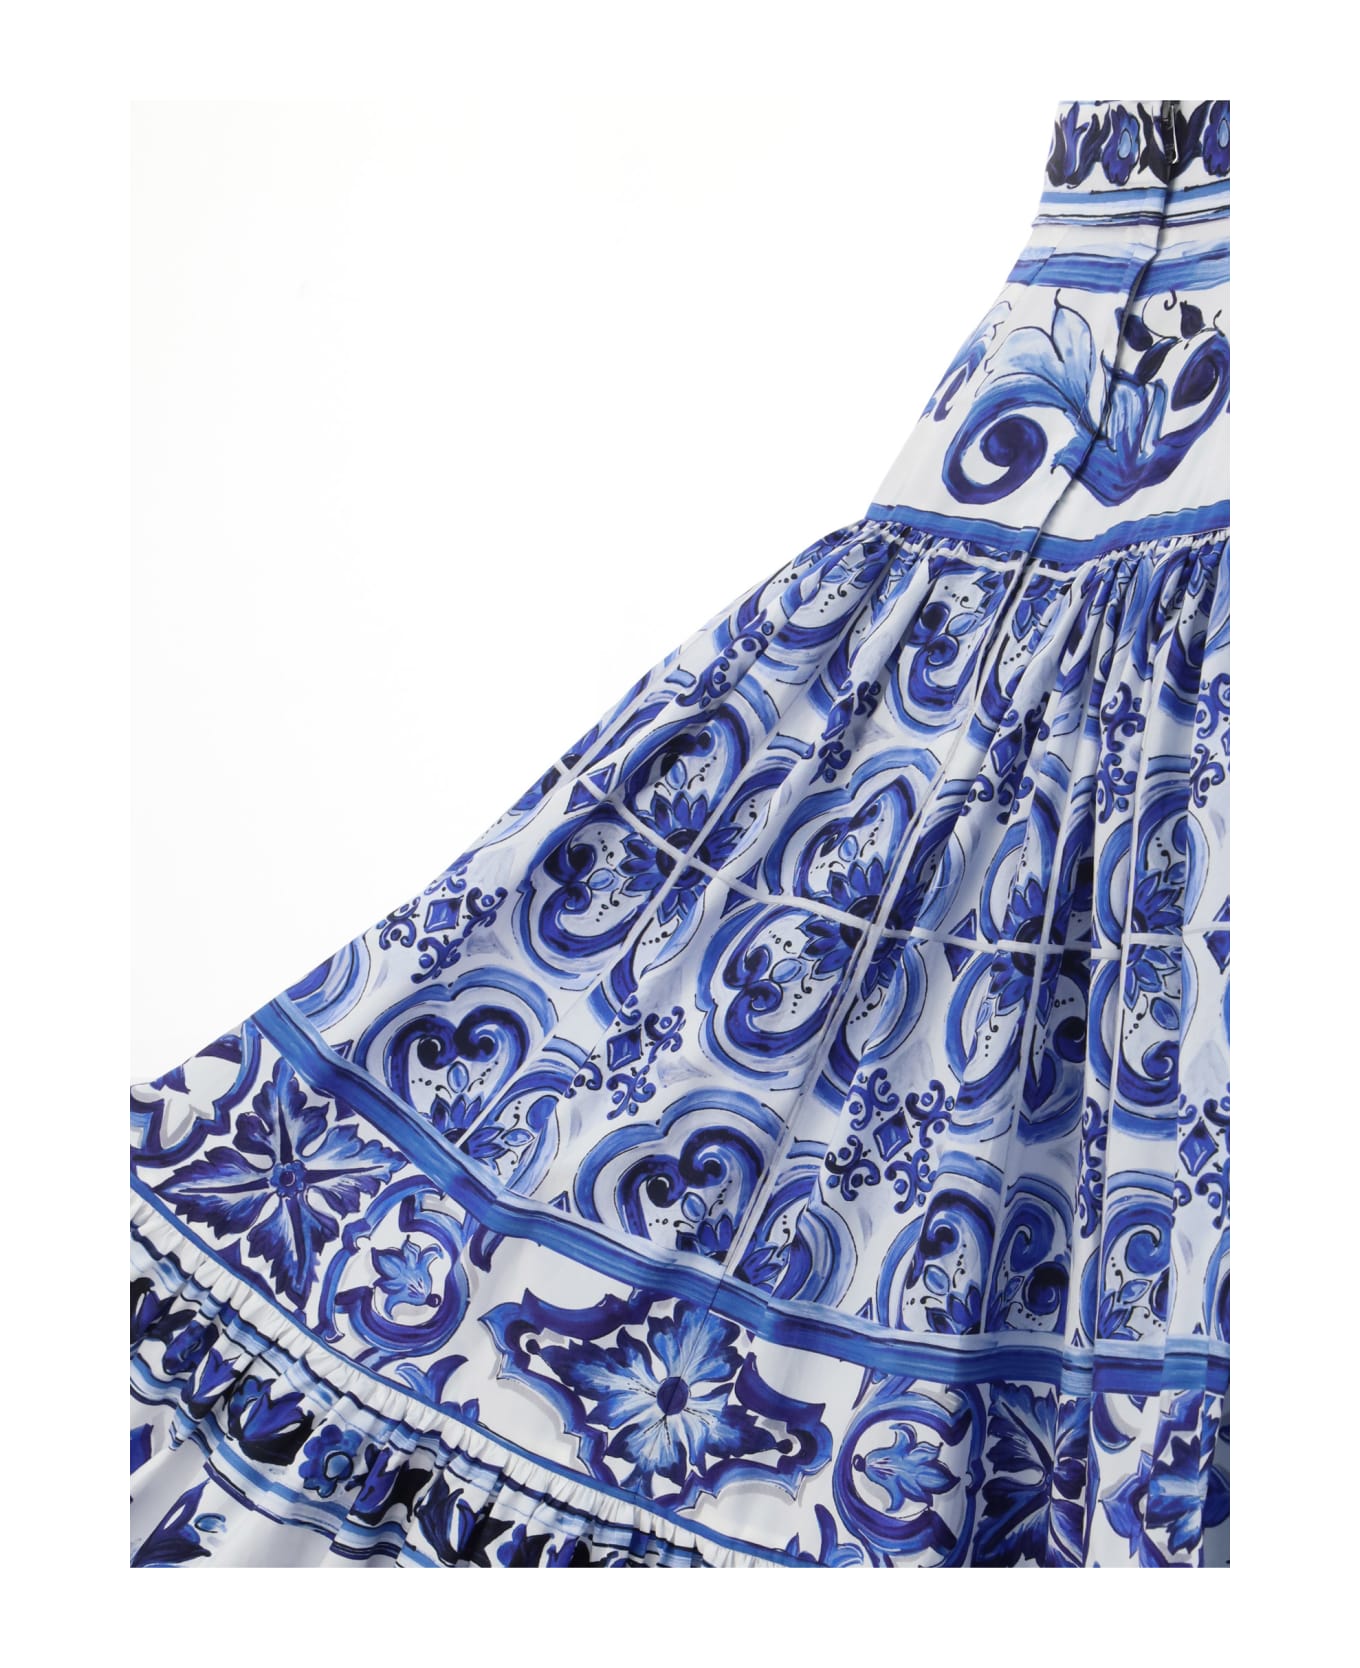 Dolce & Gabbana Skirt - Tn Blu/bco